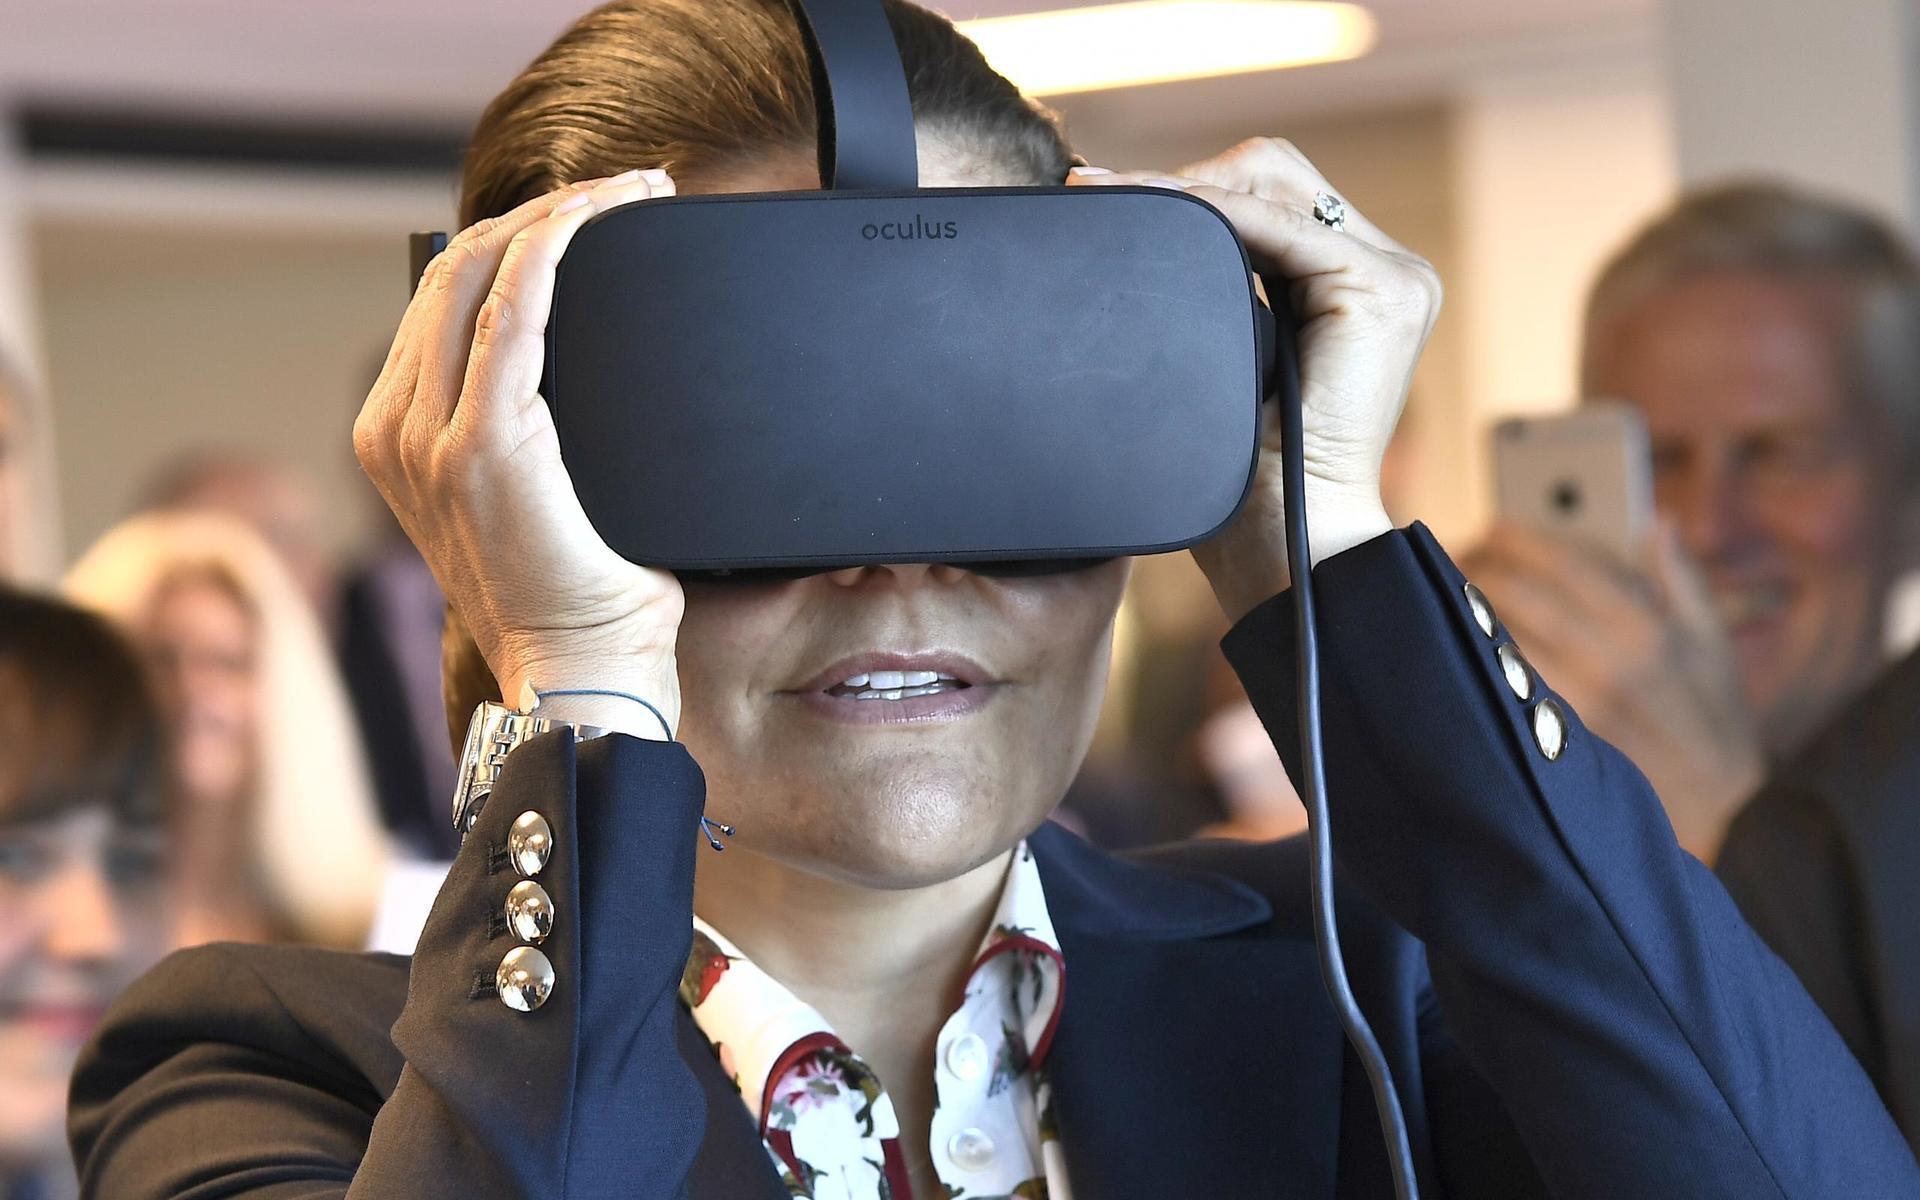 2016: VR-glasögonen visade att vi lever i den digitala tidsåldern med ständigt ny teknik. Samtidigt lever vi i ett upplevelsesamhälle där vi förväntar oss mervärden och förstärkta upplevelser i de flesta situationer.